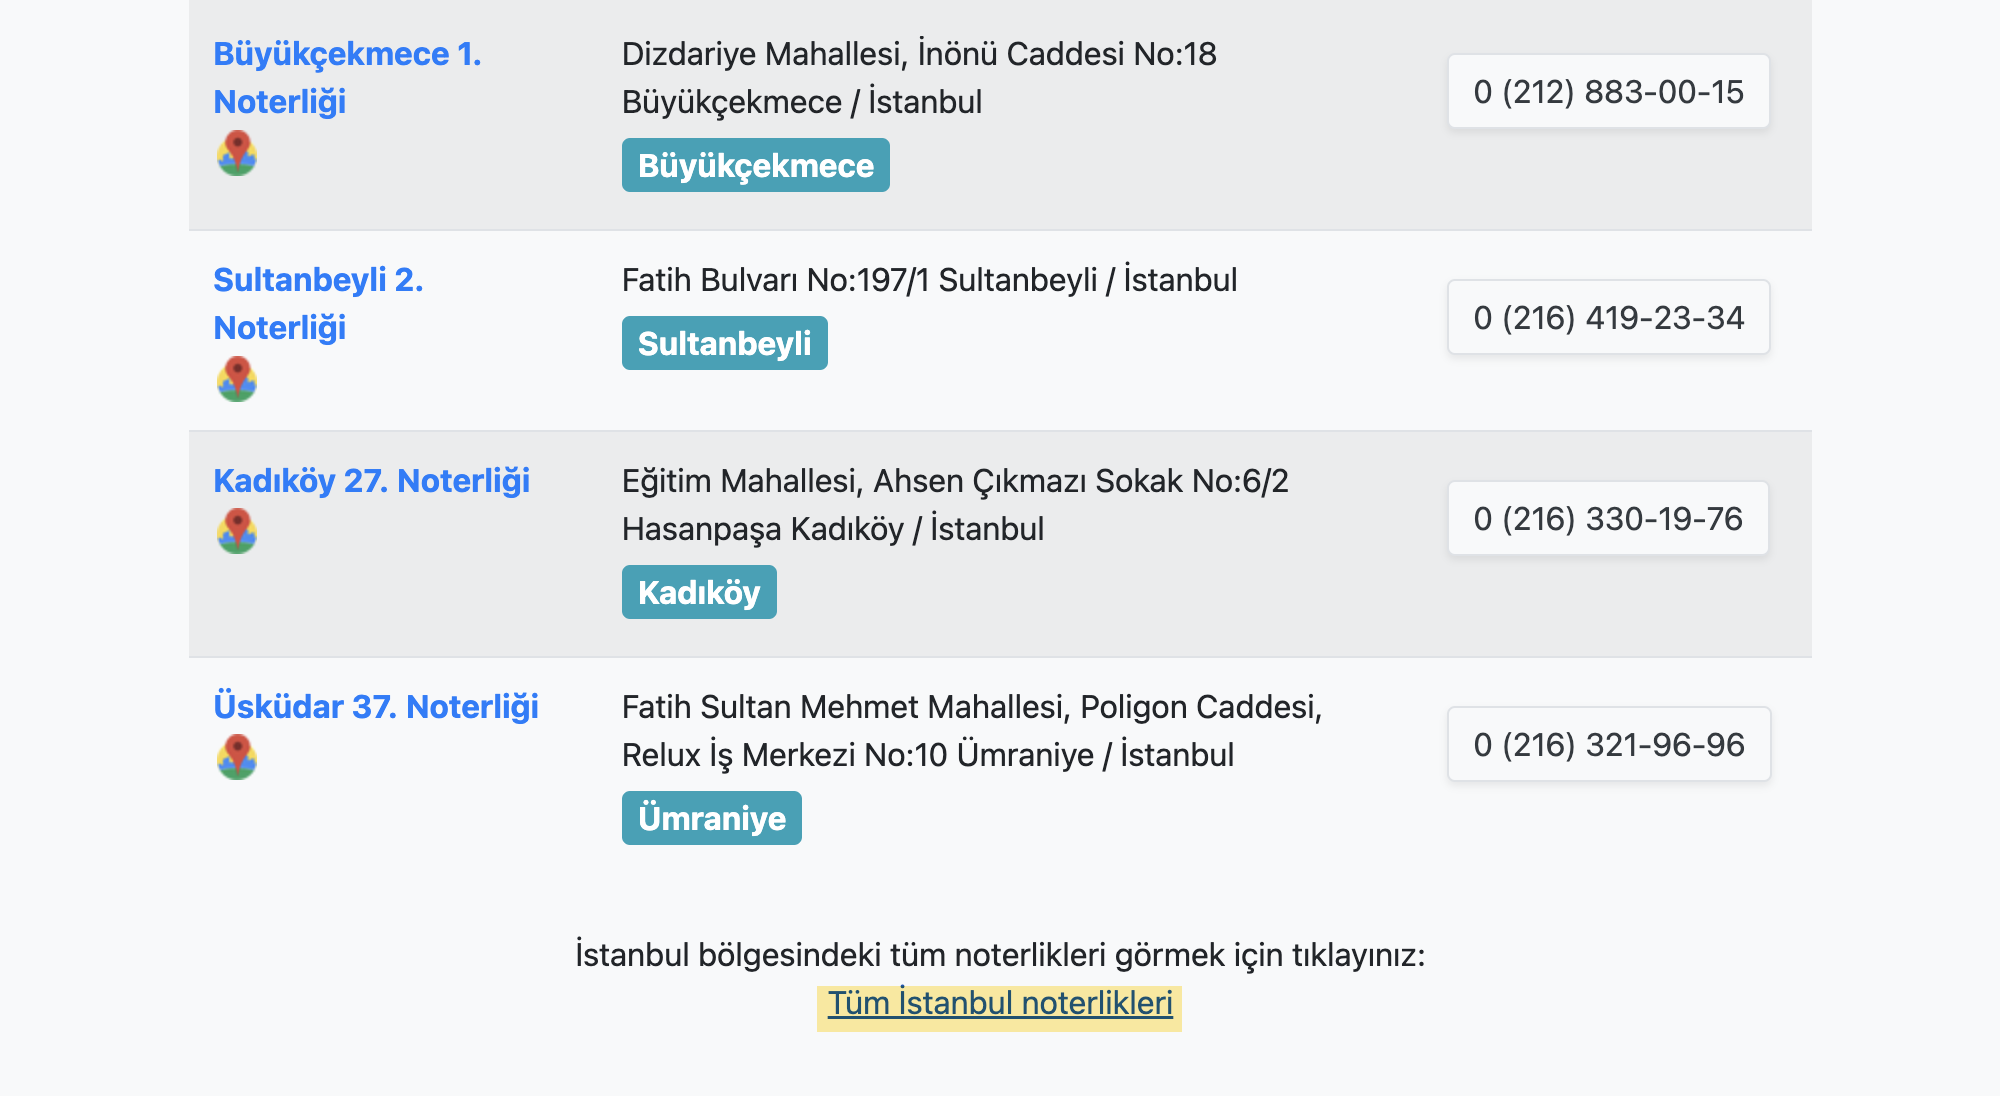 Чтобы увидеть список всех нотариусов, надо нажать ссылку в самом конце страницы, в нашем случае — Tüm İstanbul noterlikleri («Все нотариусы Стамбула»). Источник: noter.web.tr